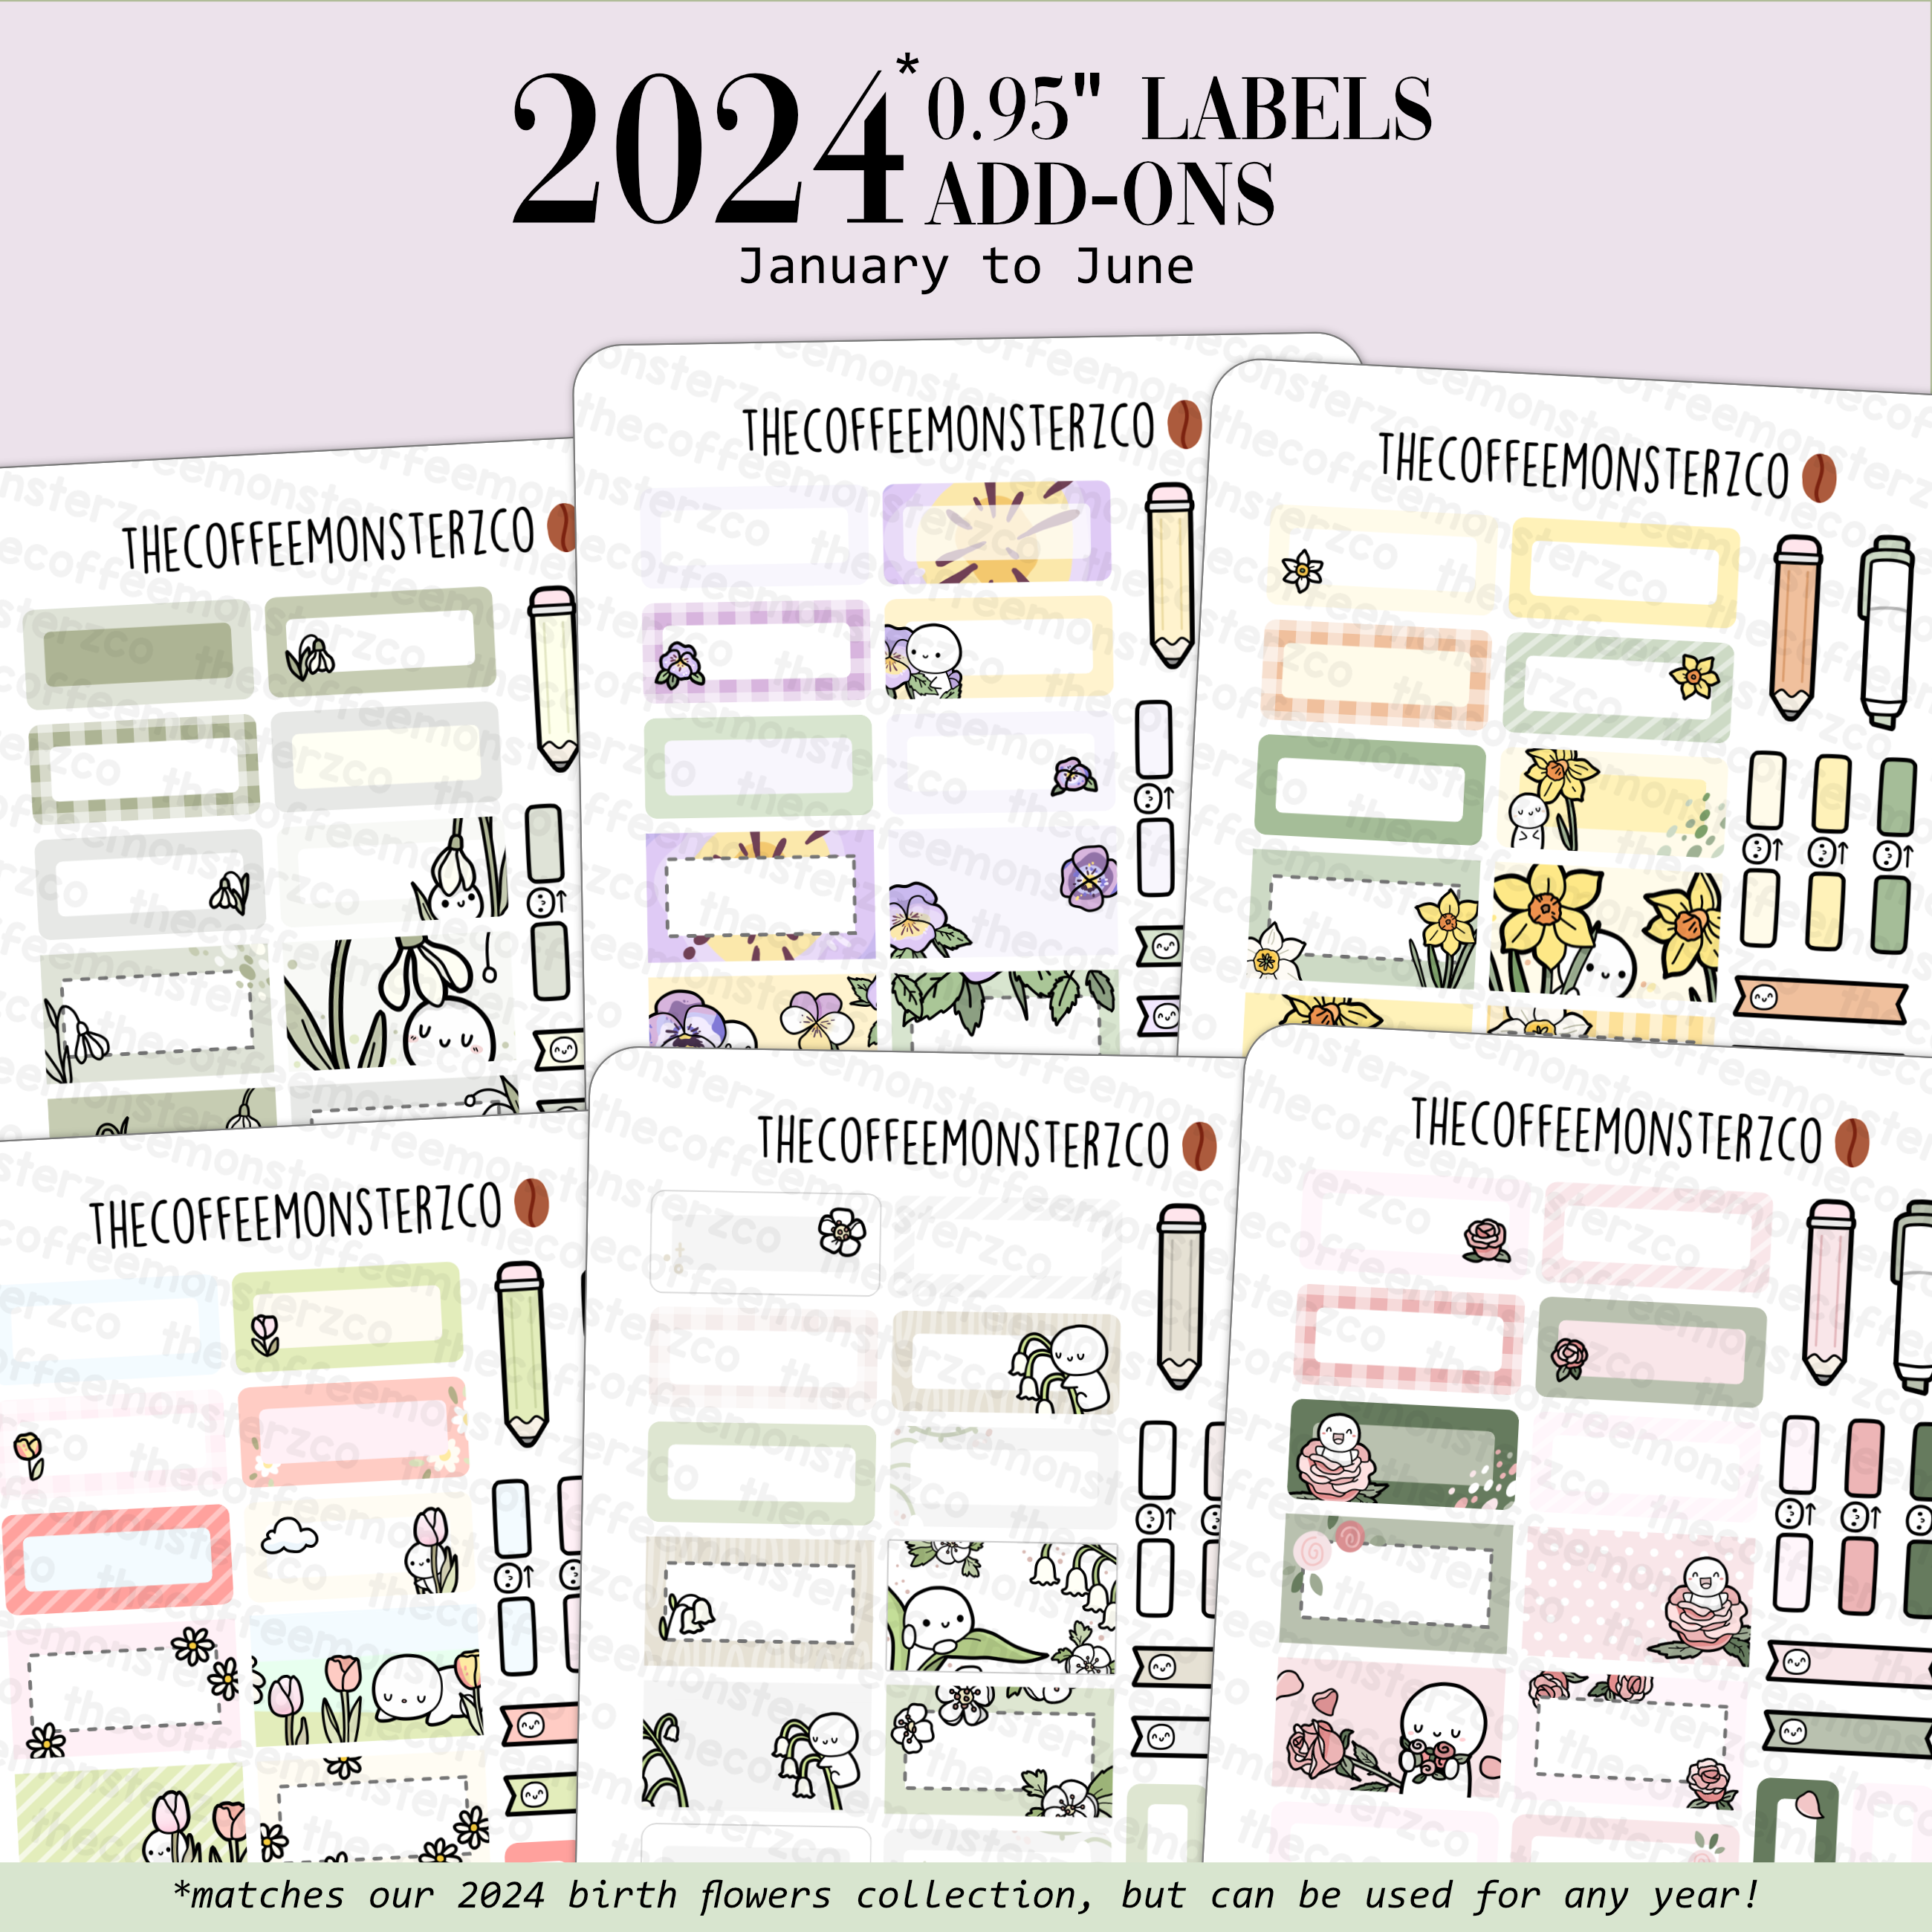 2024 Coordinating Add-ons - Medium Labels (0.95&quot;) - Part 1